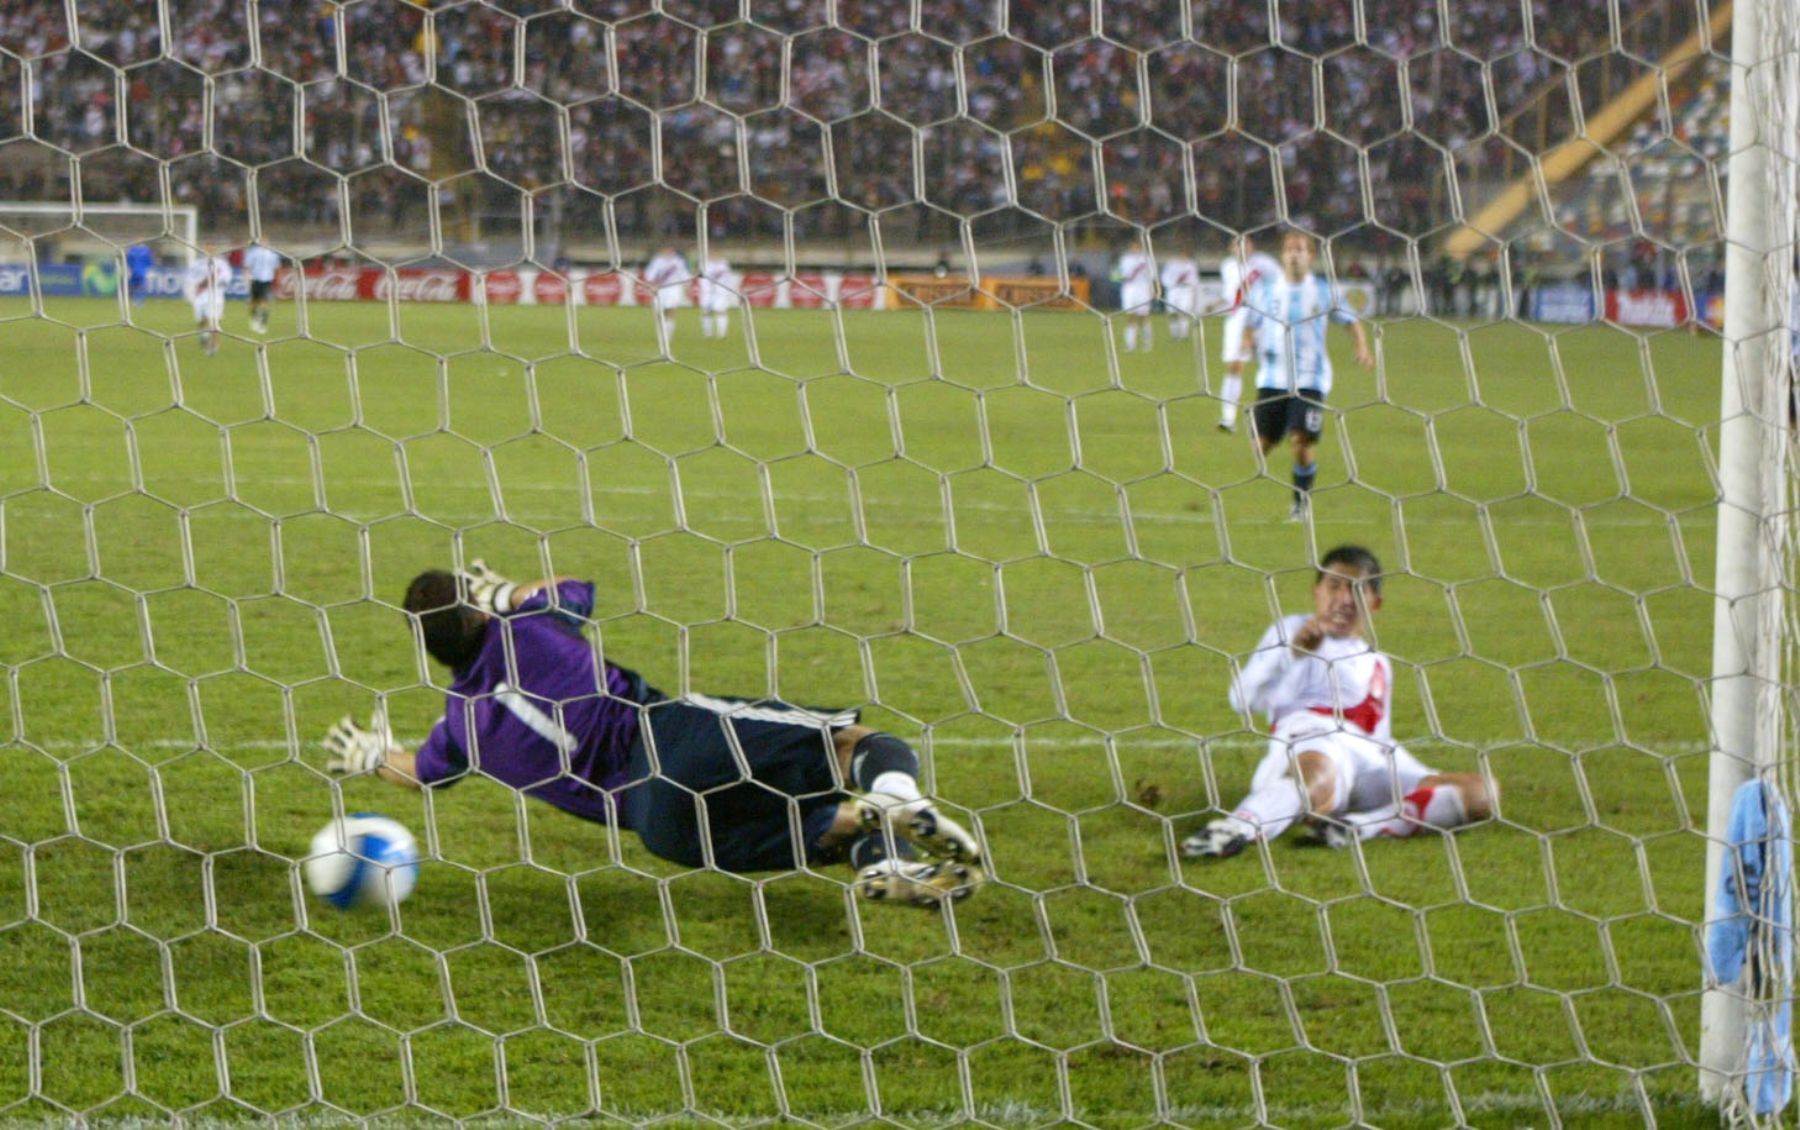 Johan Fano metio el gol de empate un minuto antes de finalizar el encuentro entre el selecciondo peruano y argentino. Foto: ANDINA / Rubèn Grandez.